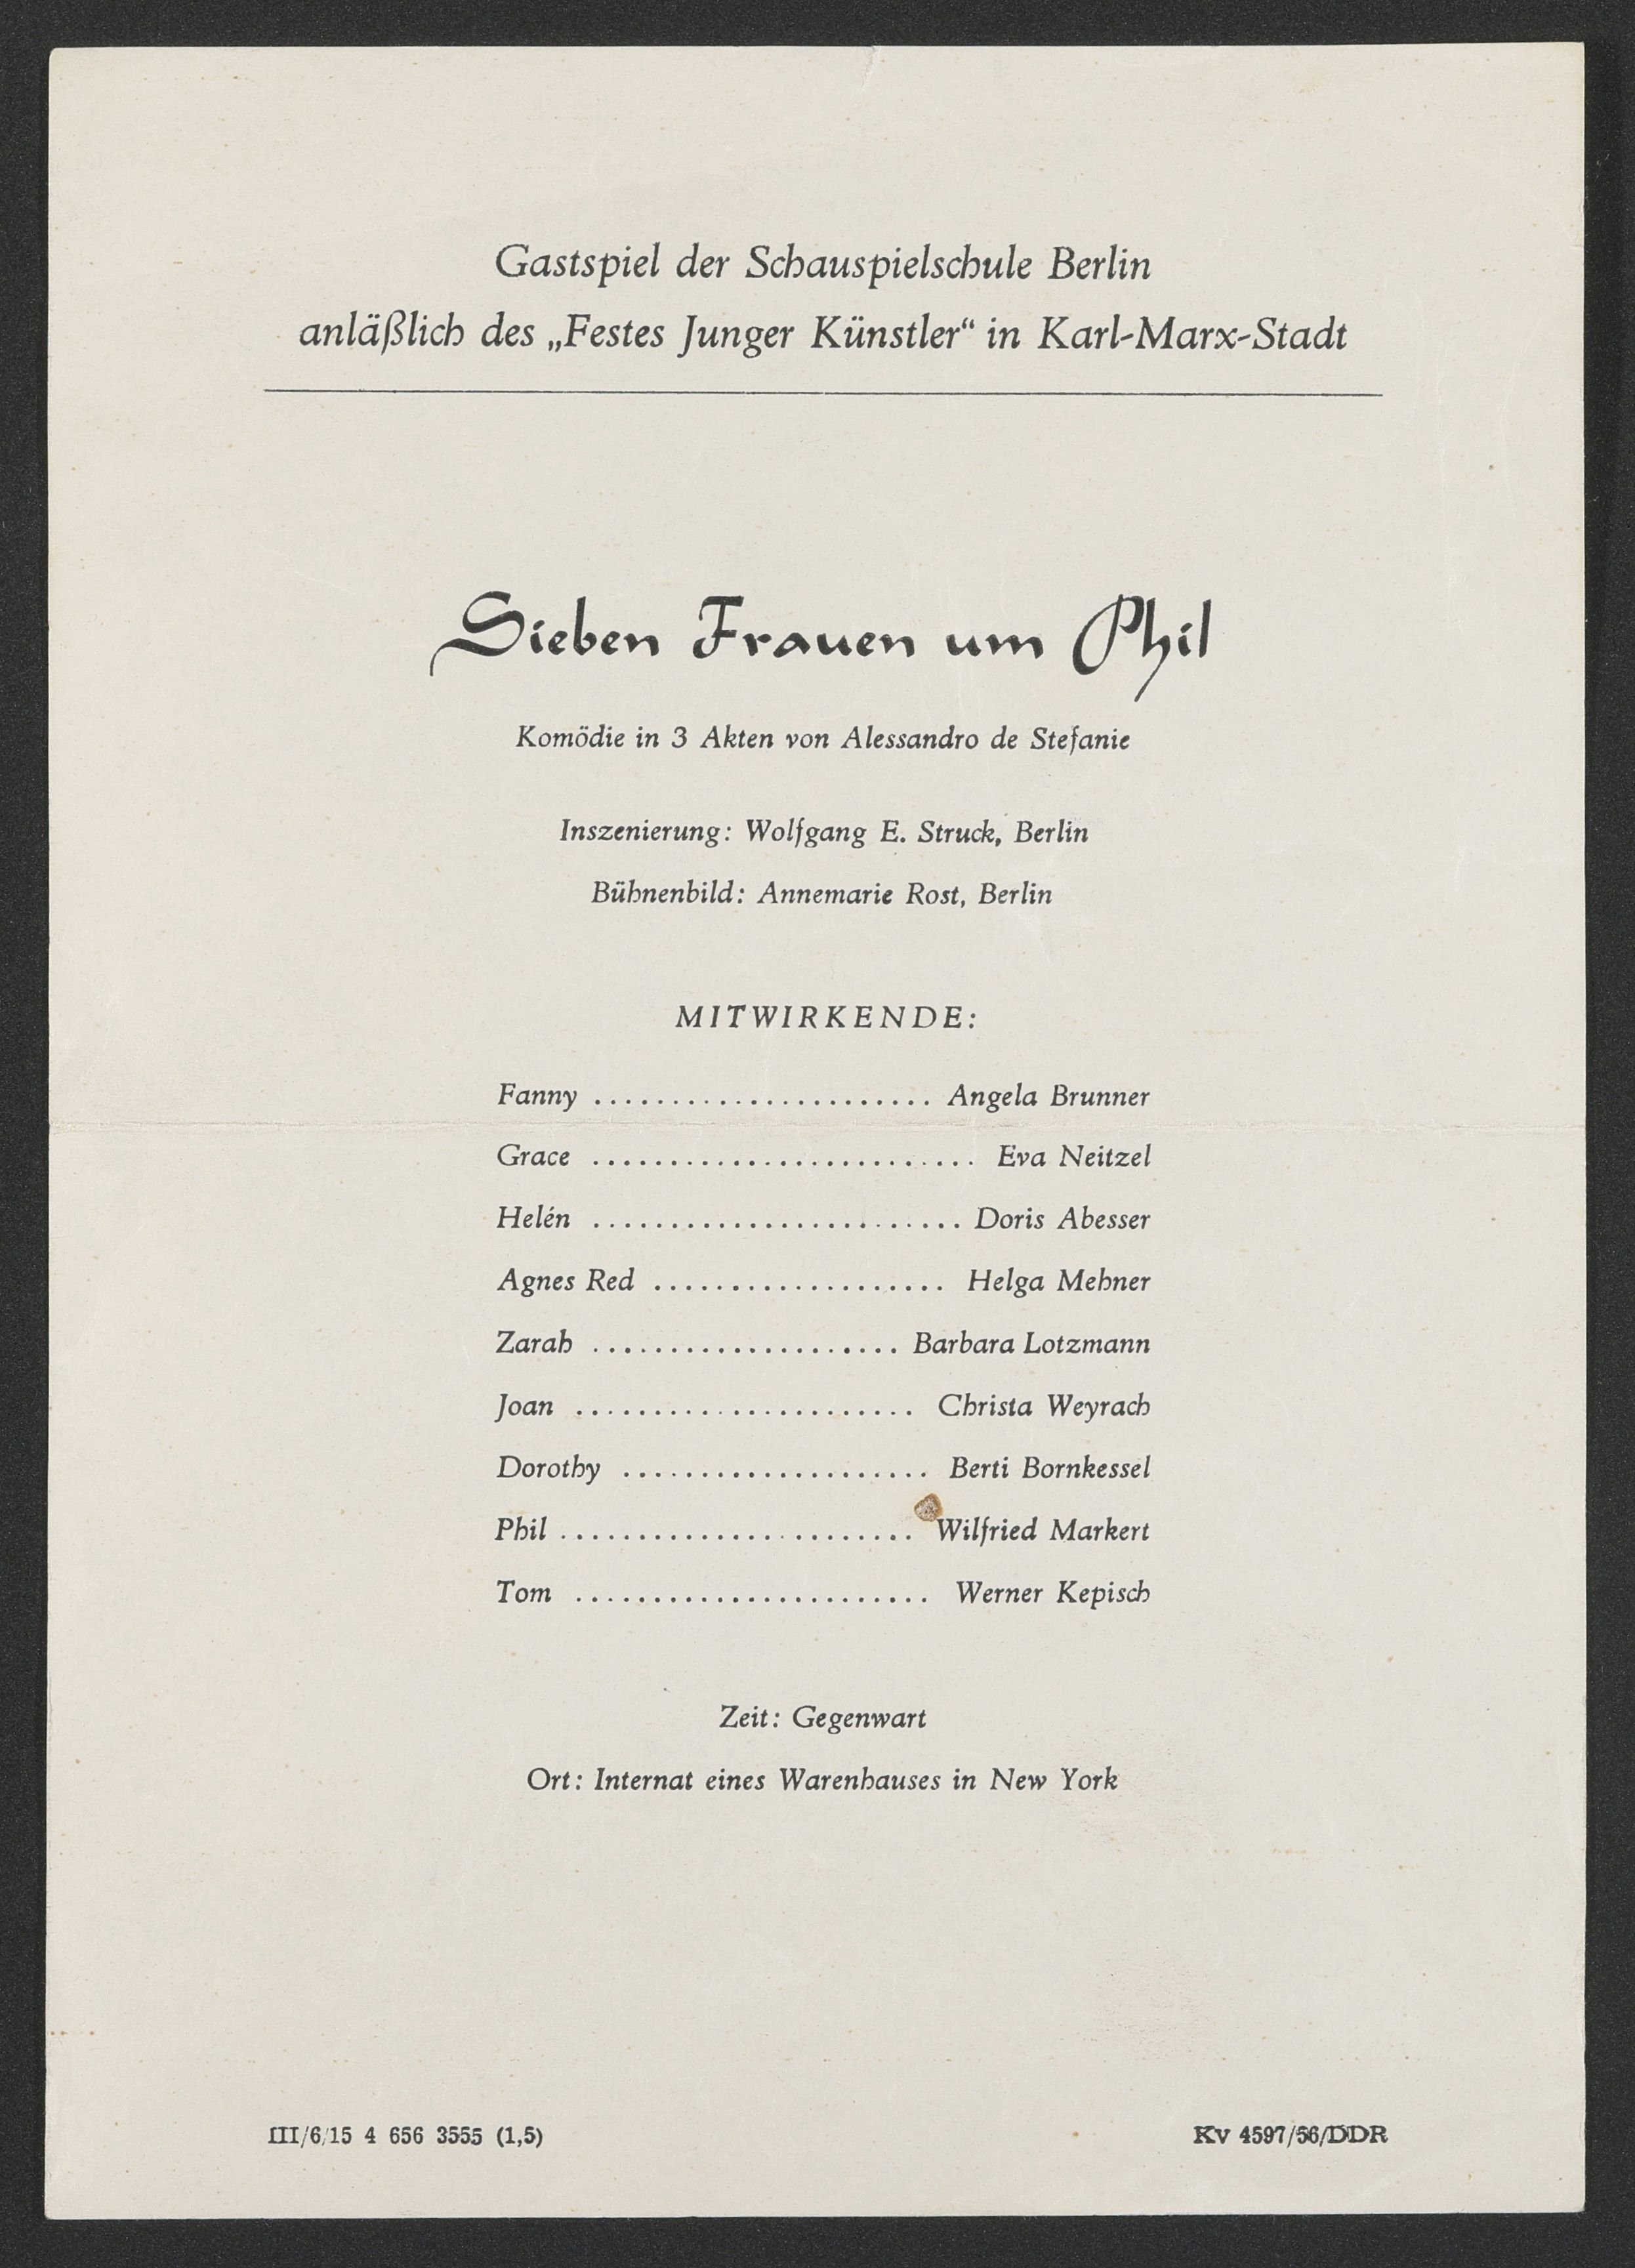 Programmzettel zu "Sieben Frauen um Phil" in Karl-Marx-Stadt 1956 (Hochschule für Schauspielkunst Ernst Busch Berlin RR-F)